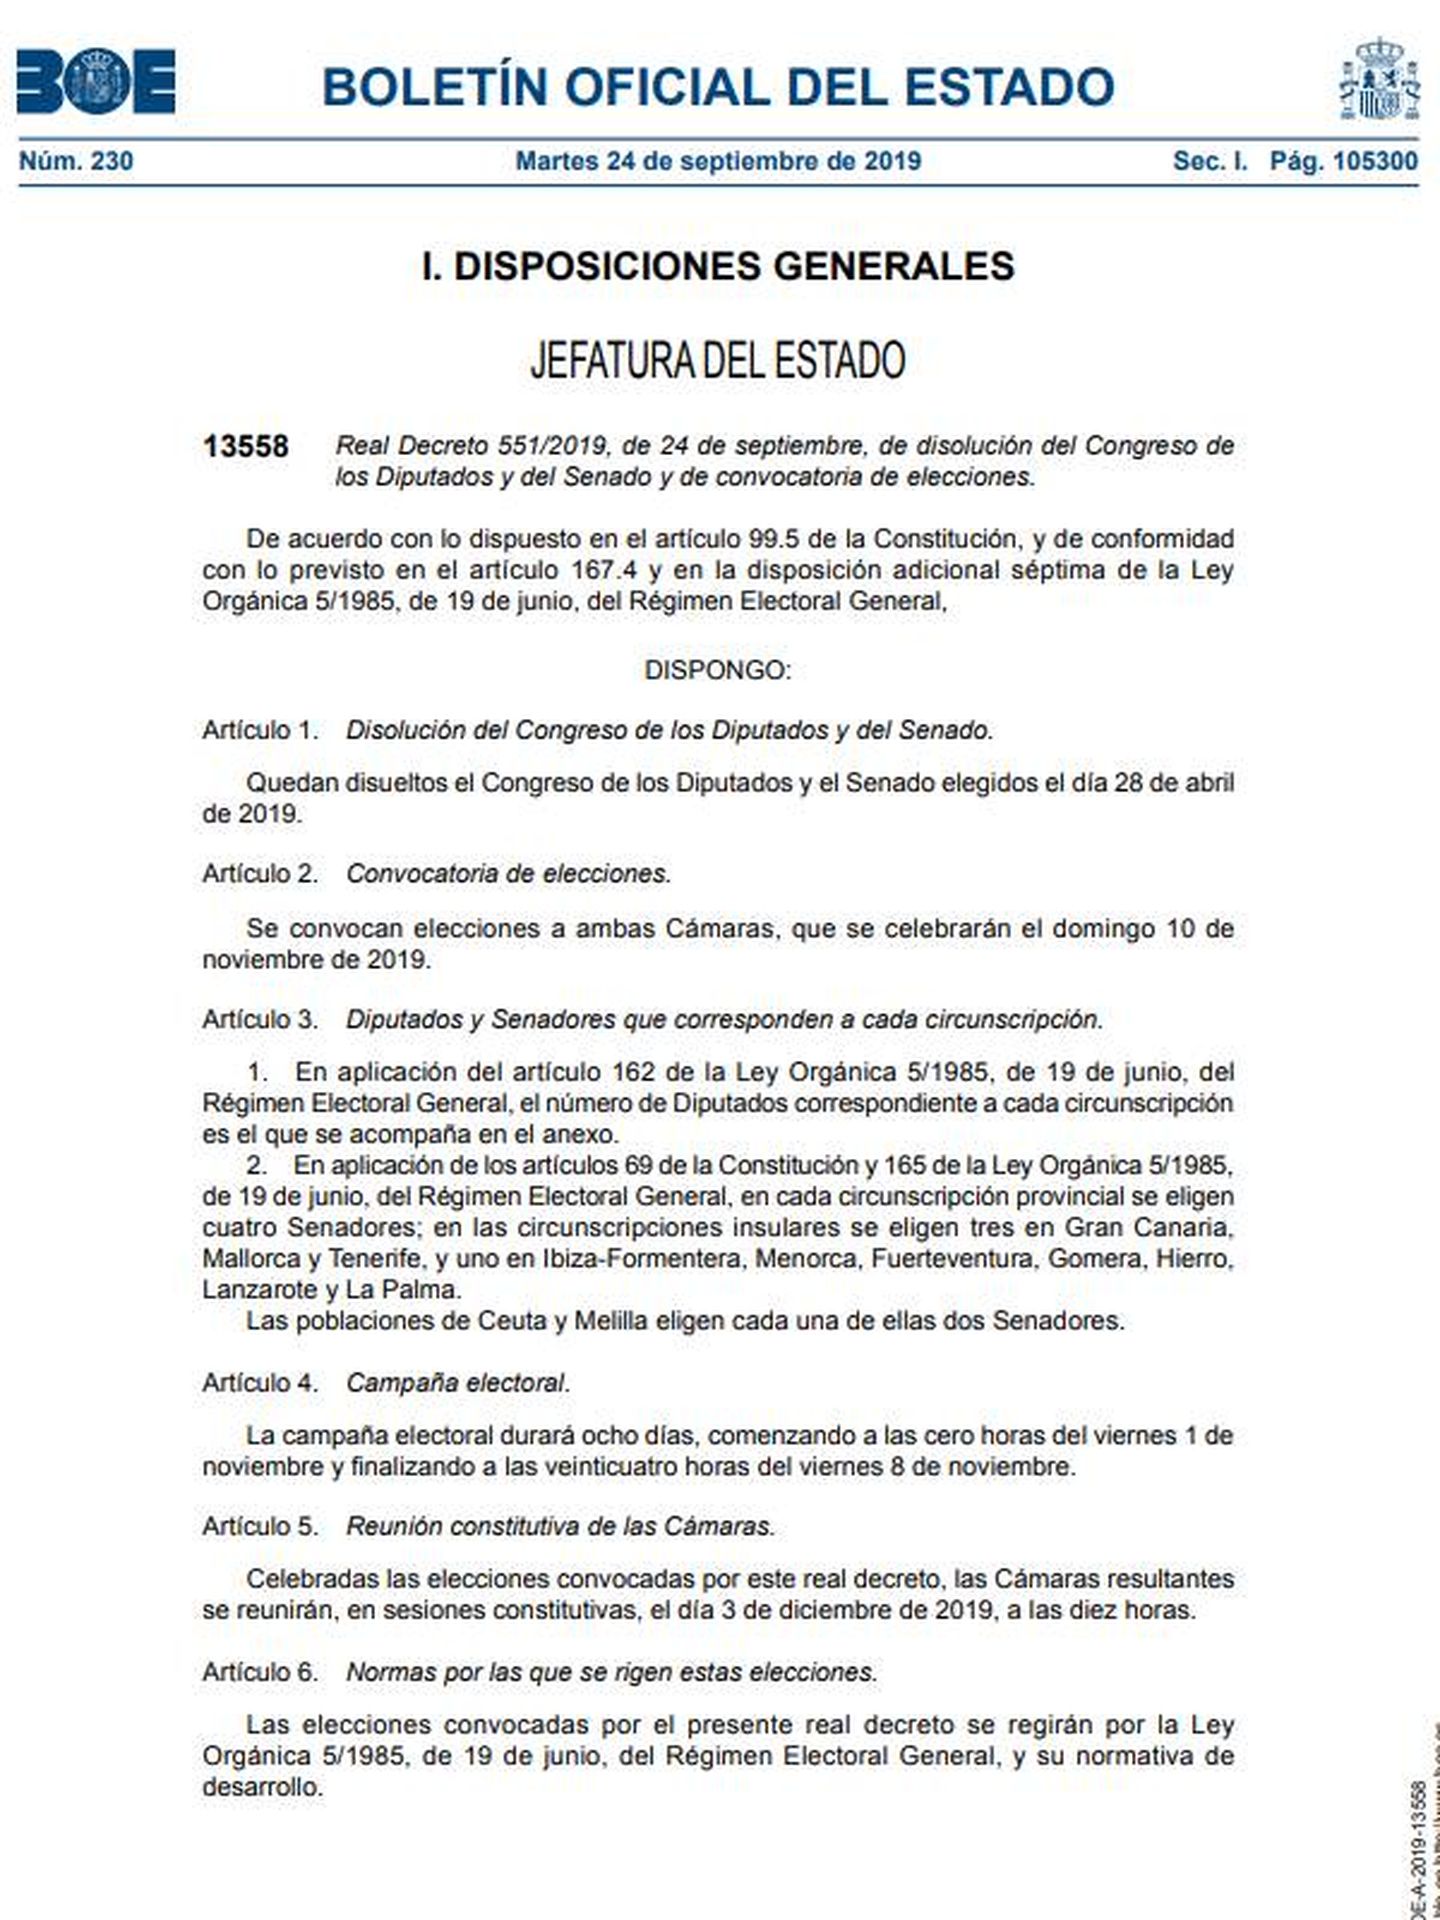 Consulte aquí en PDF el real decreto 551/2019 de disolución de las Cámaras y convocatoria de elecciones para el 10-N. 